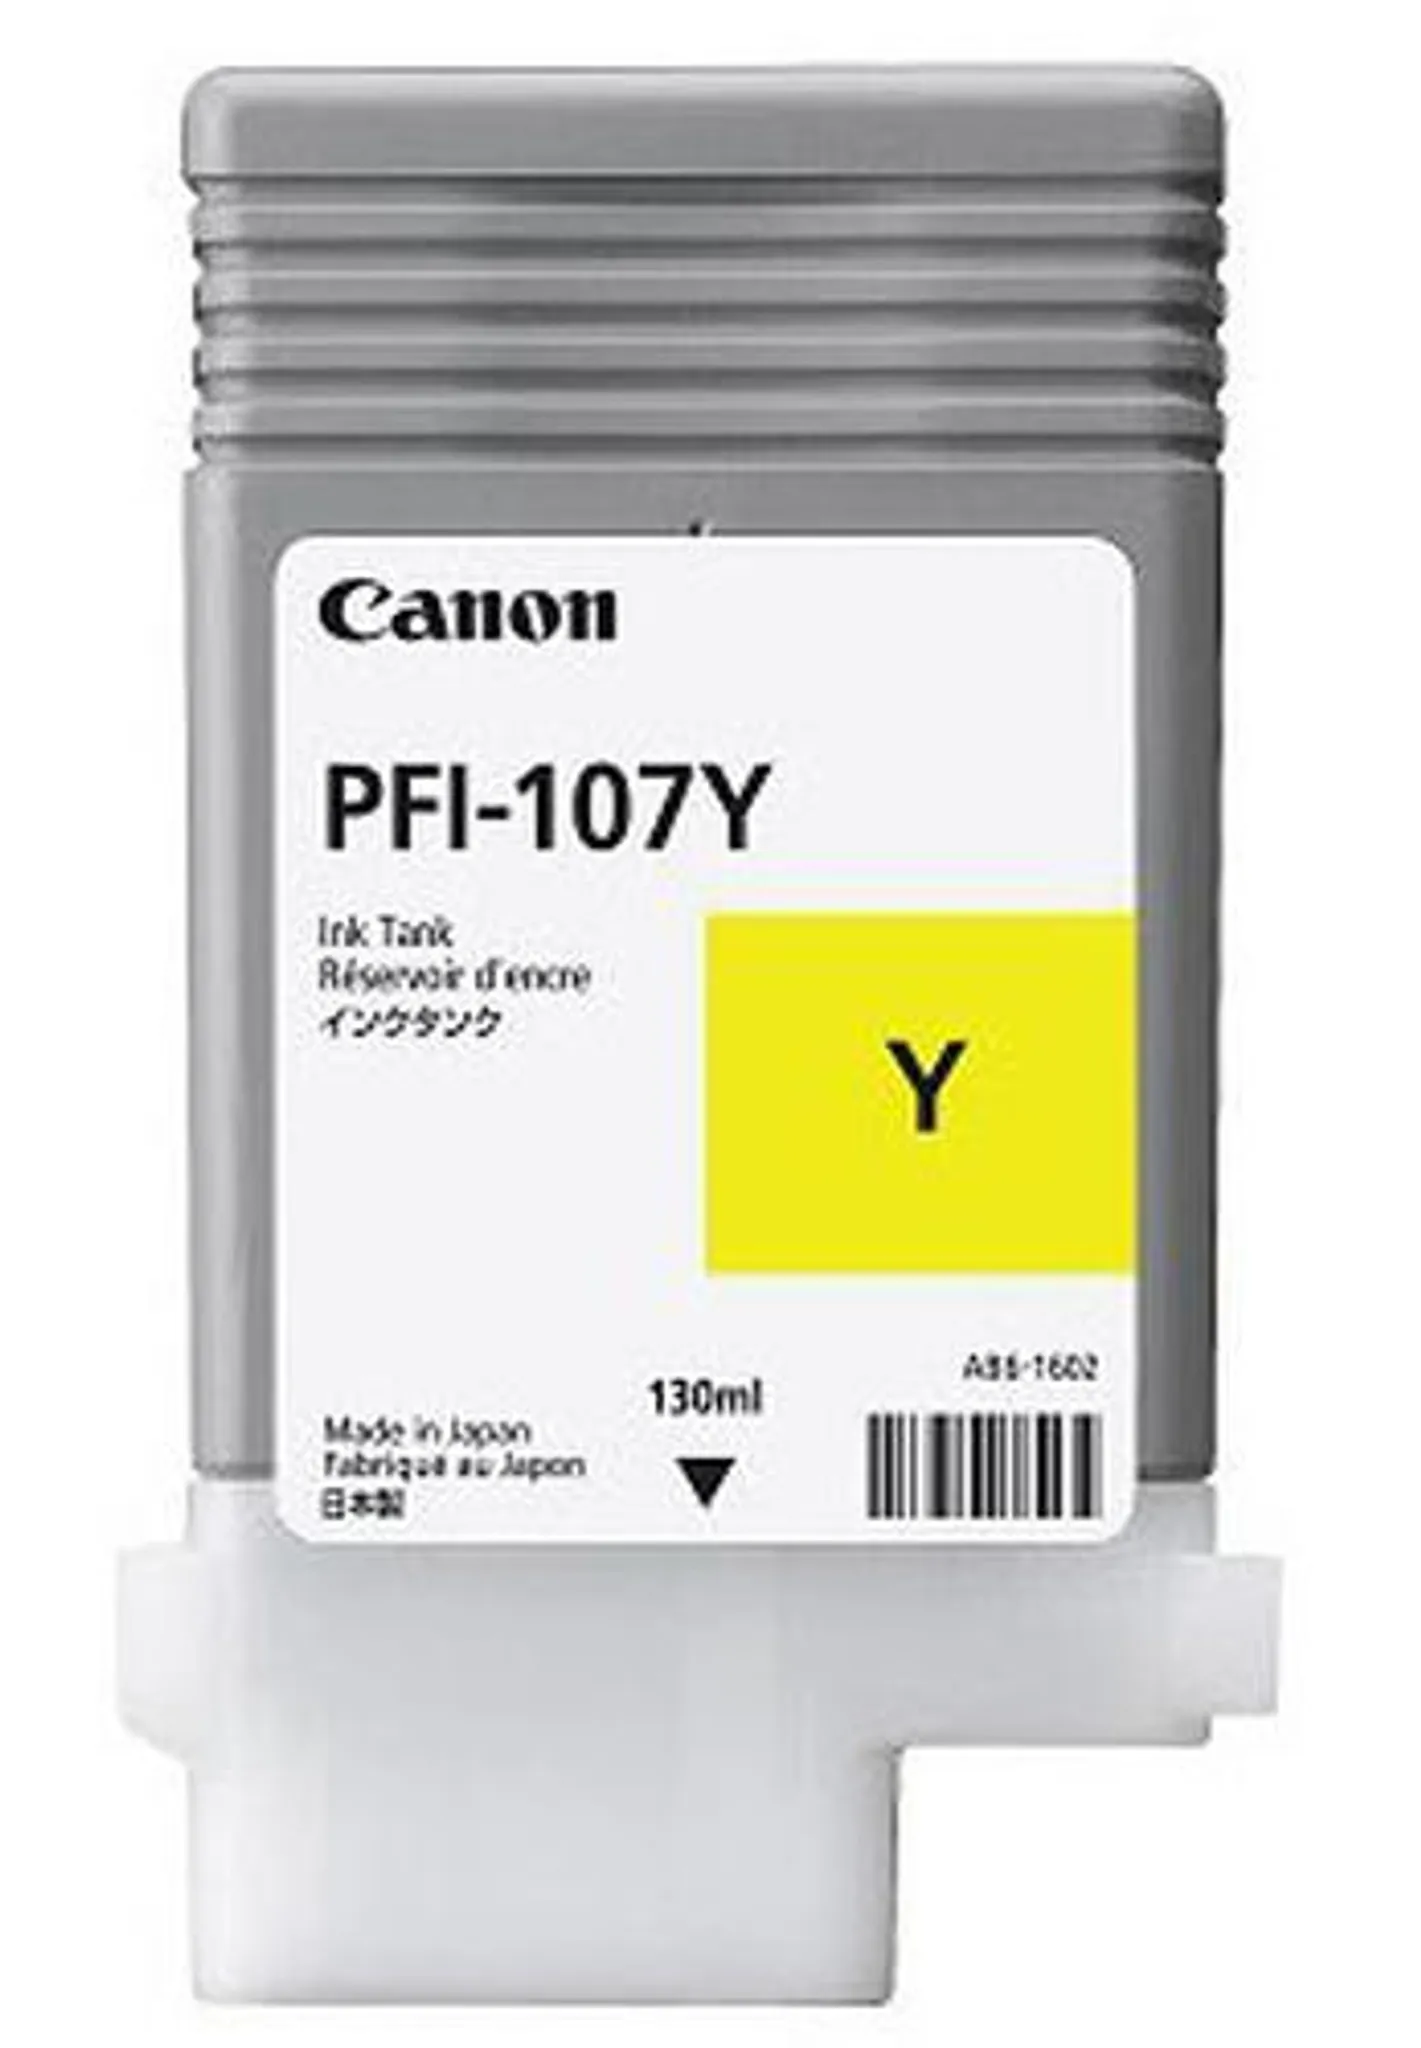 Canon PFI-107 Y Tinte yellow Original